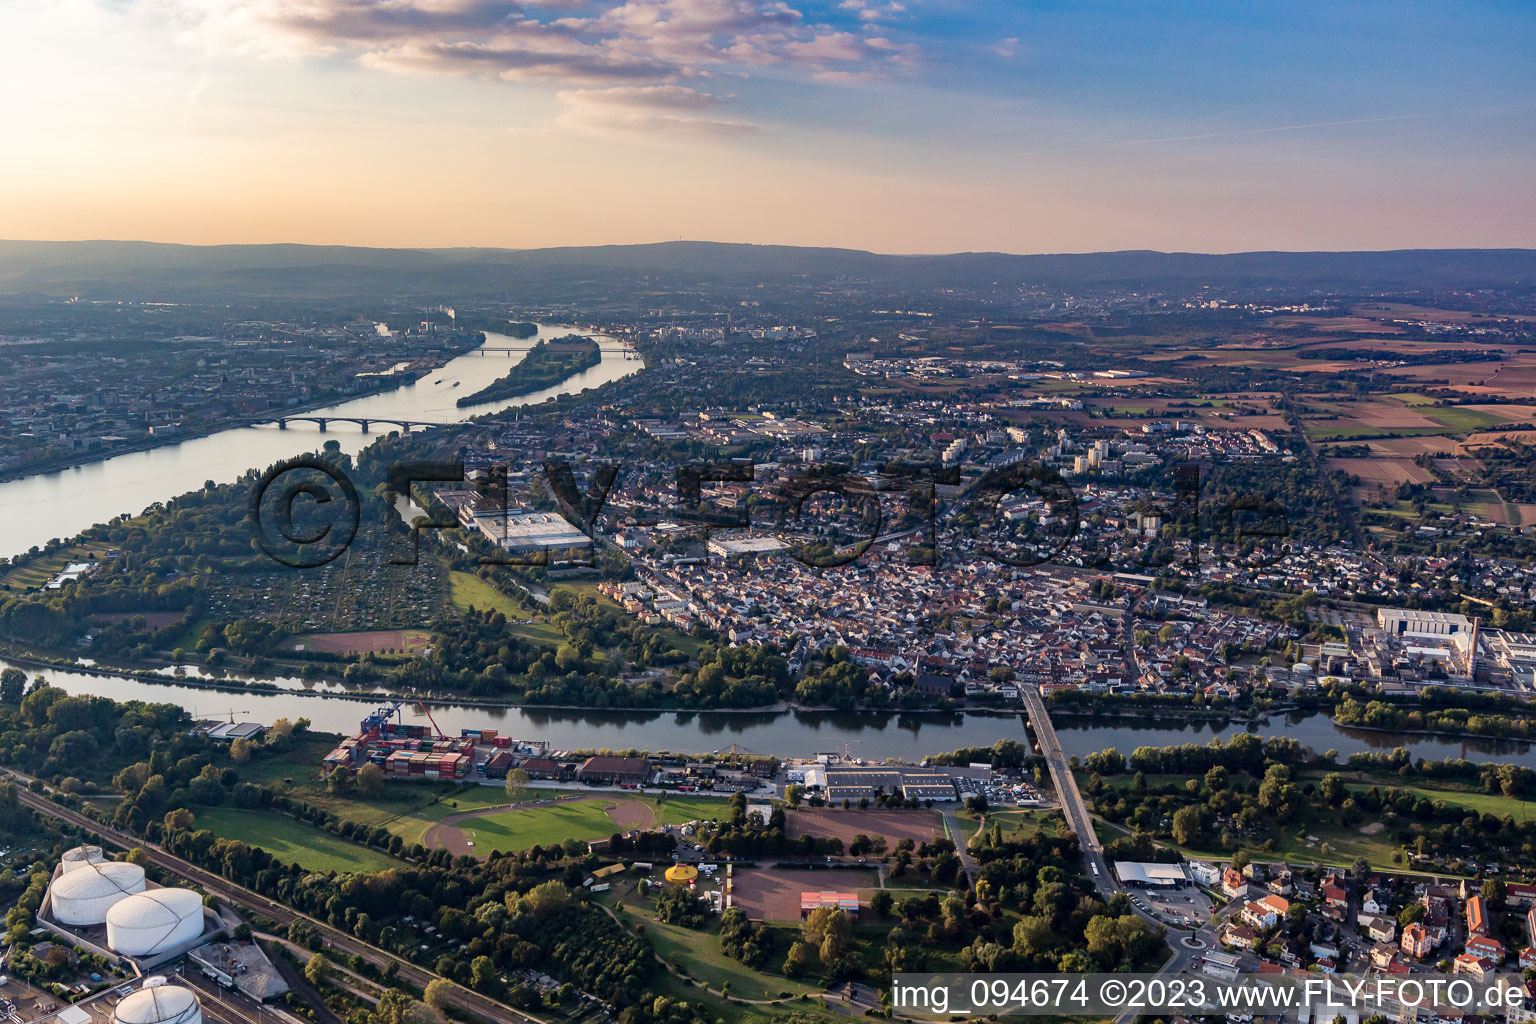 Luftbild von Mainz-Kostheim im Bundesland Rheinland-Pfalz, Deutschland